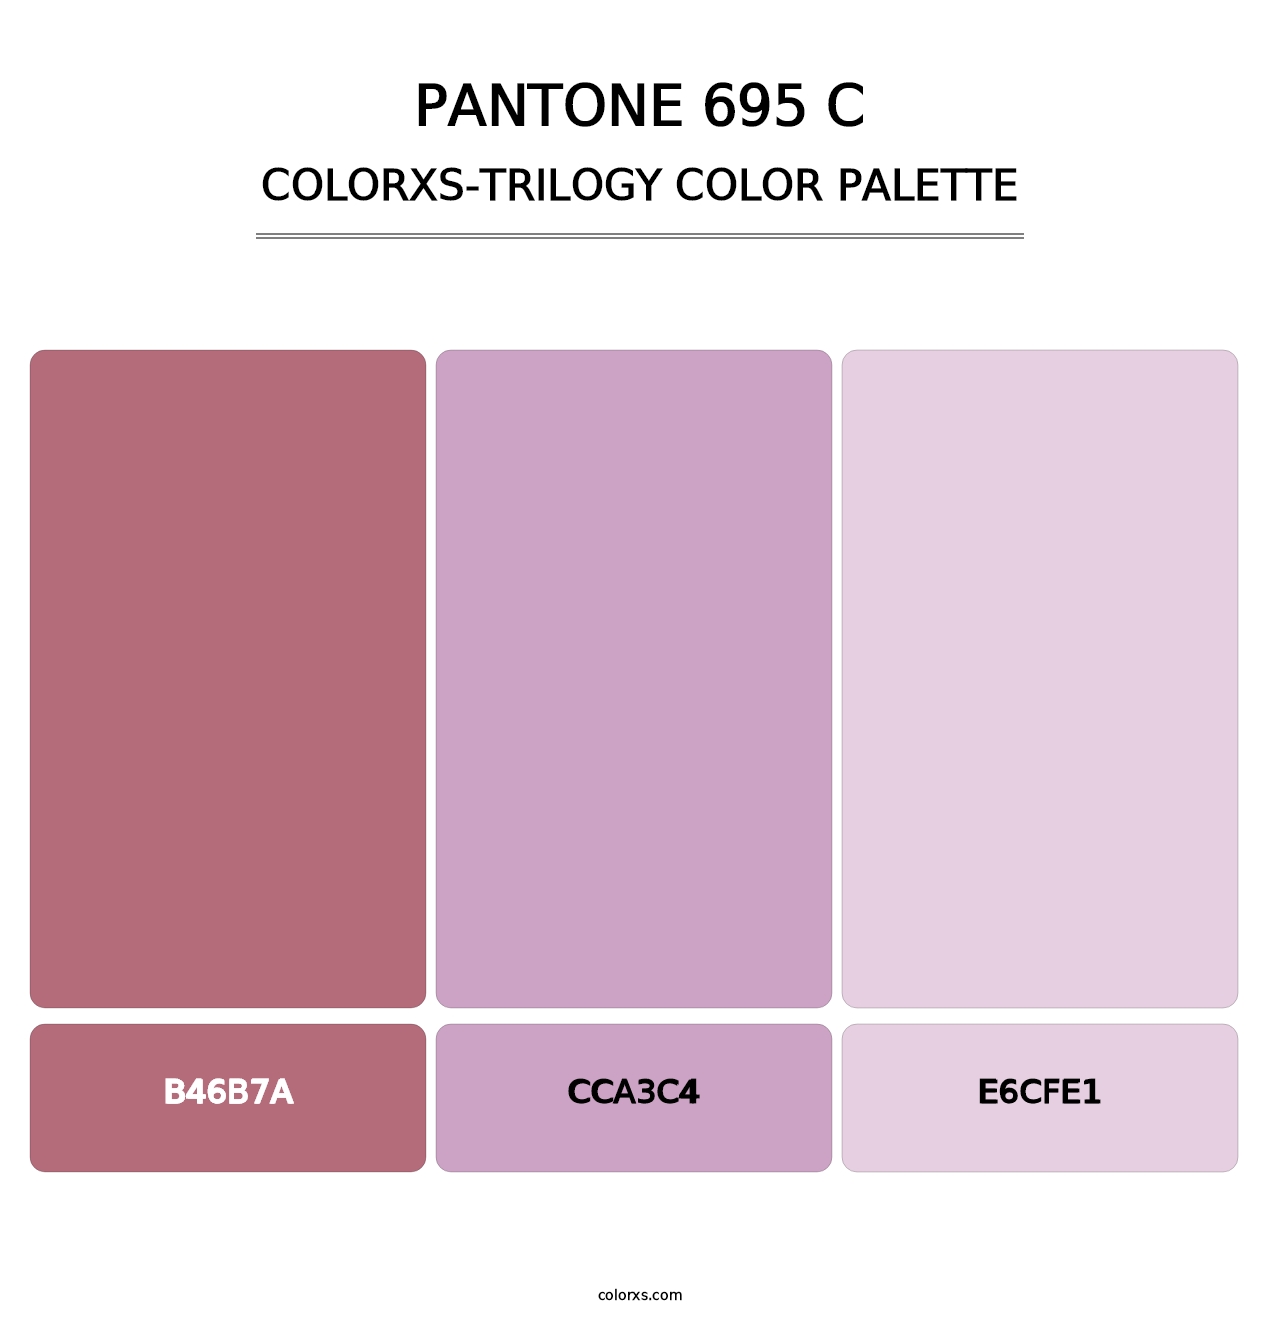 PANTONE 695 C - Colorxs Trilogy Palette